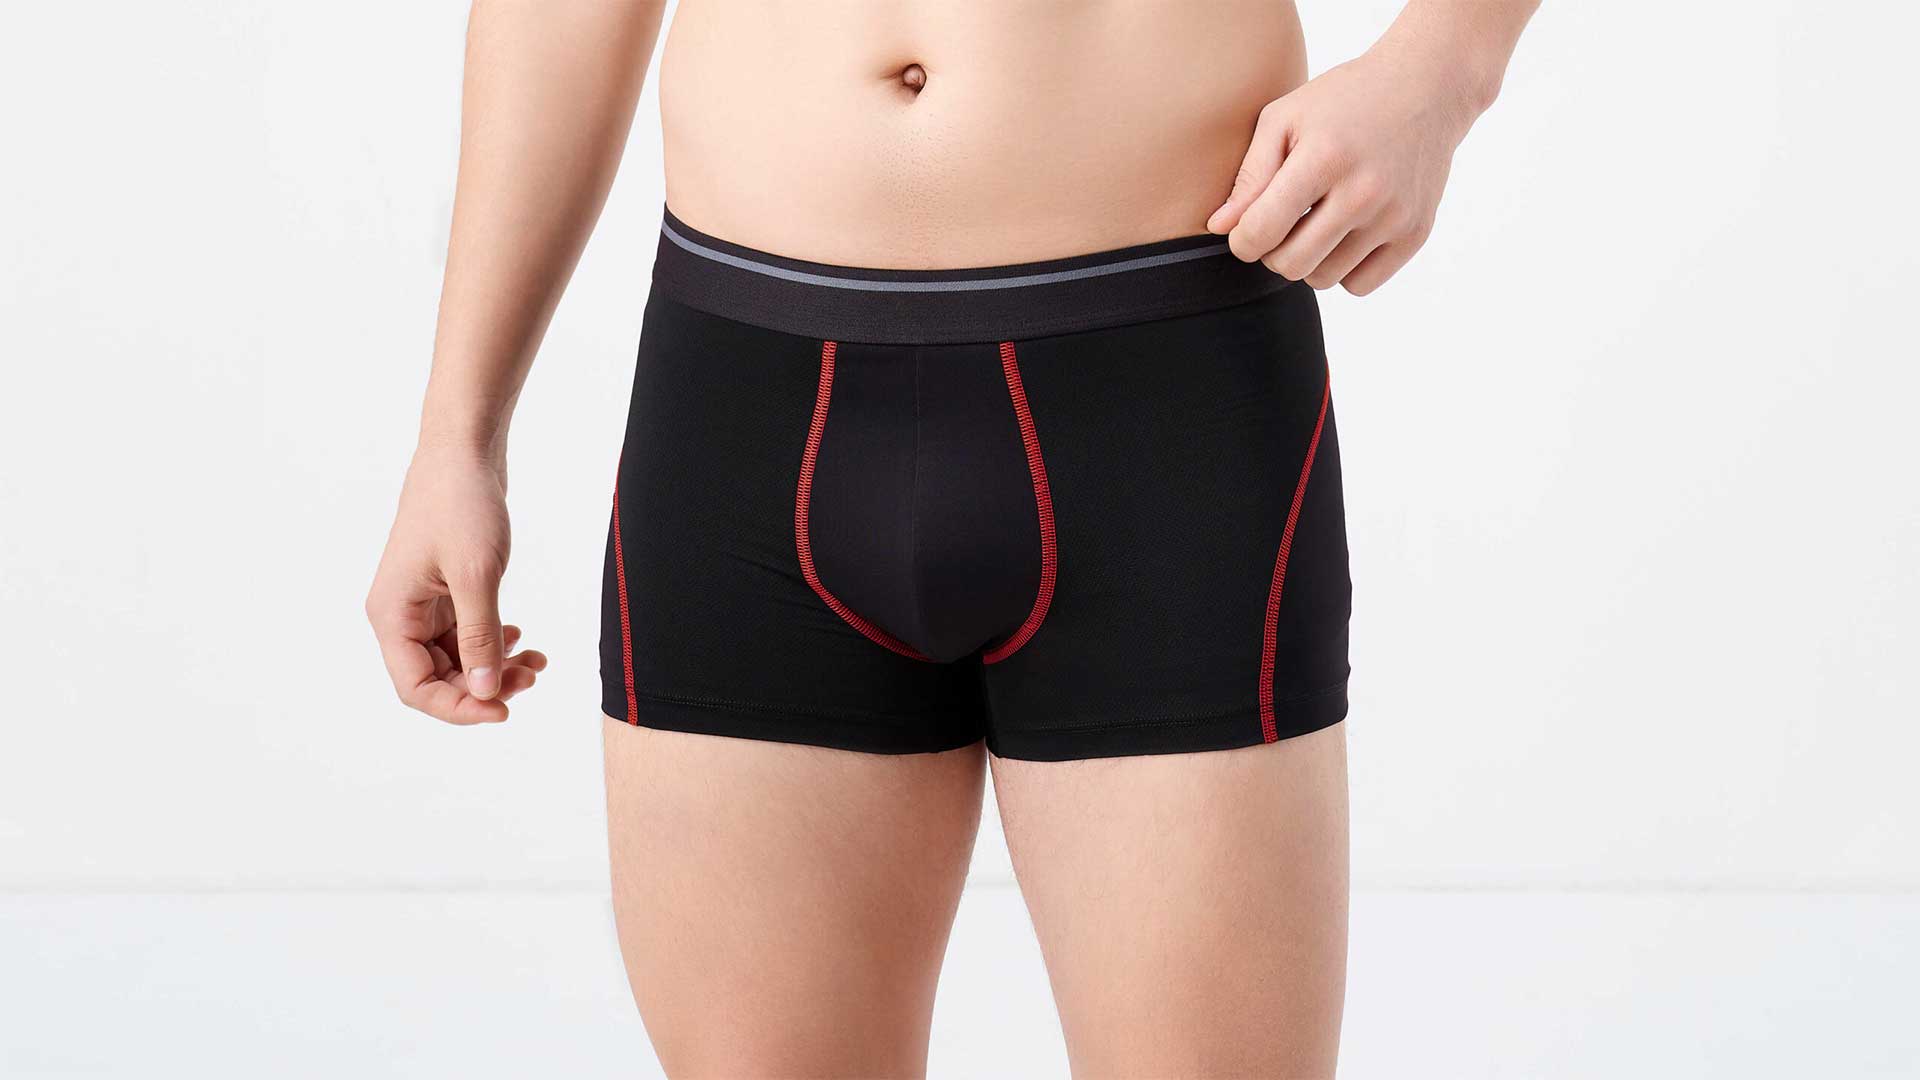 Active men's underwear